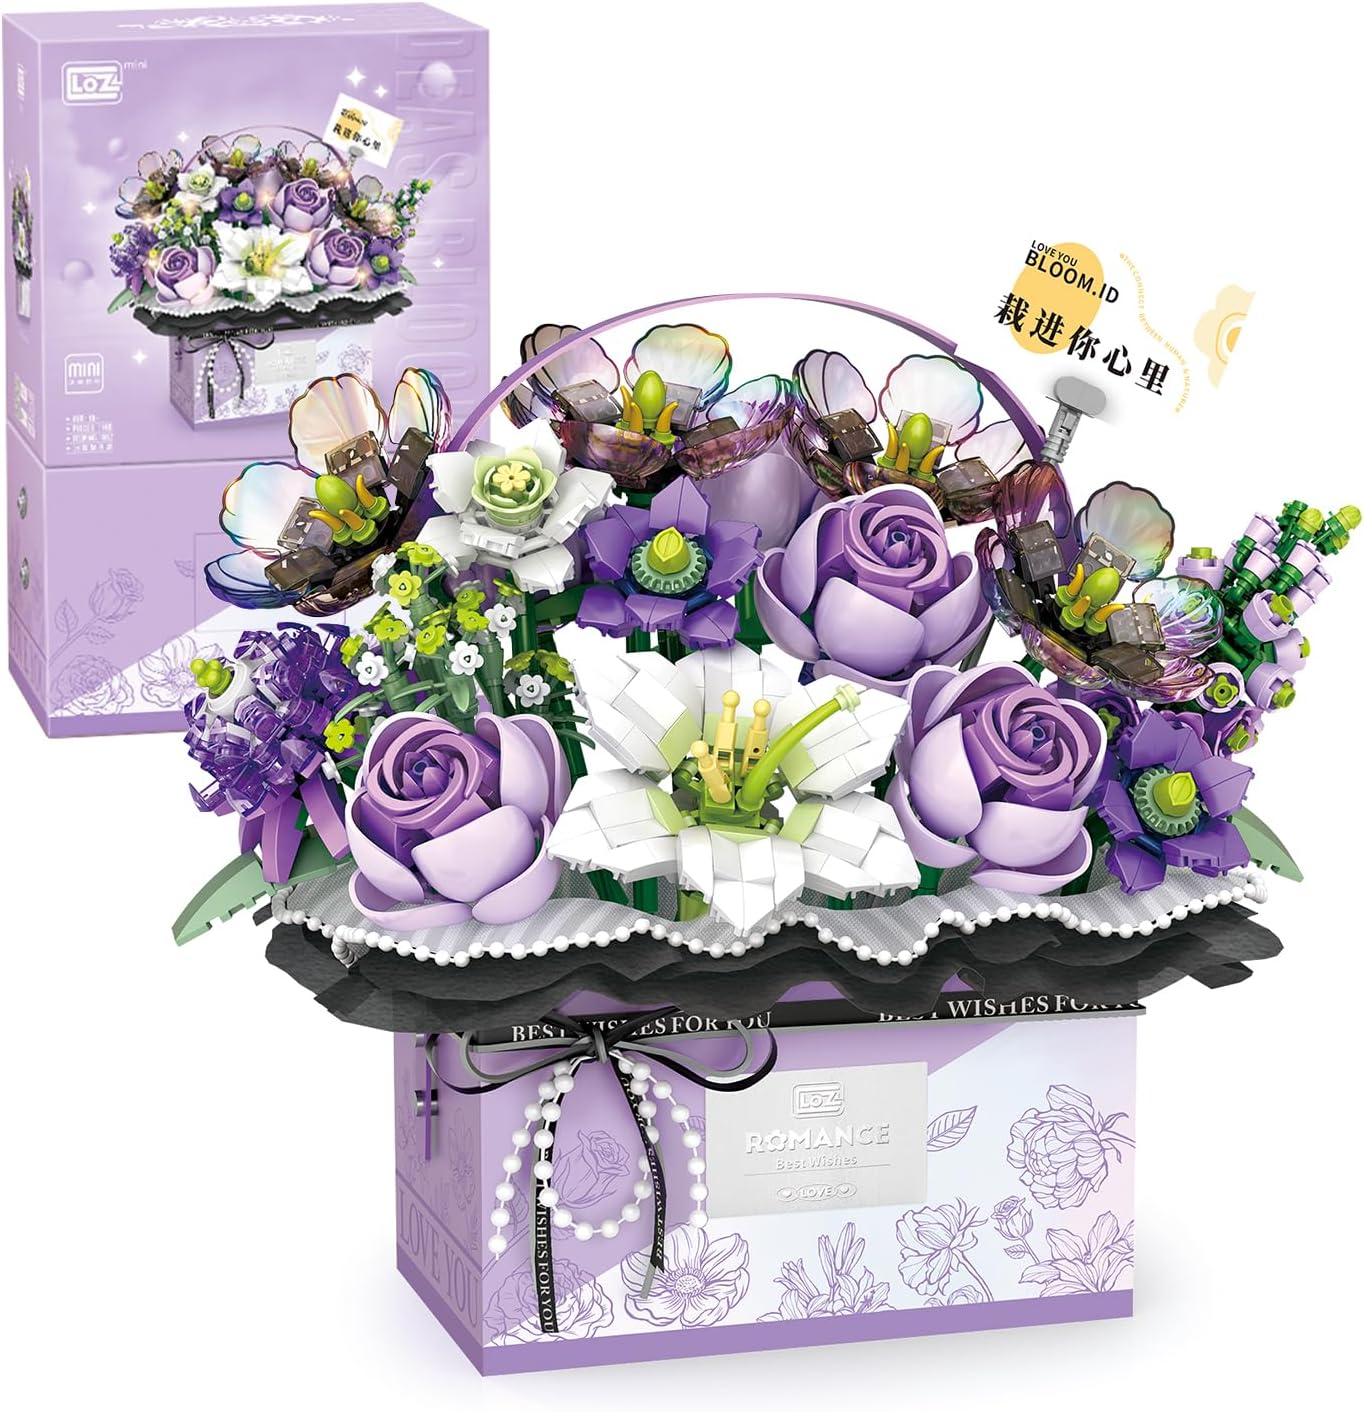 Конструктор с подсветкой LOZ Mini Block Eternal Flower Romance, фиолетовый, 1179 деталей подарочная коробка забавные цыплята